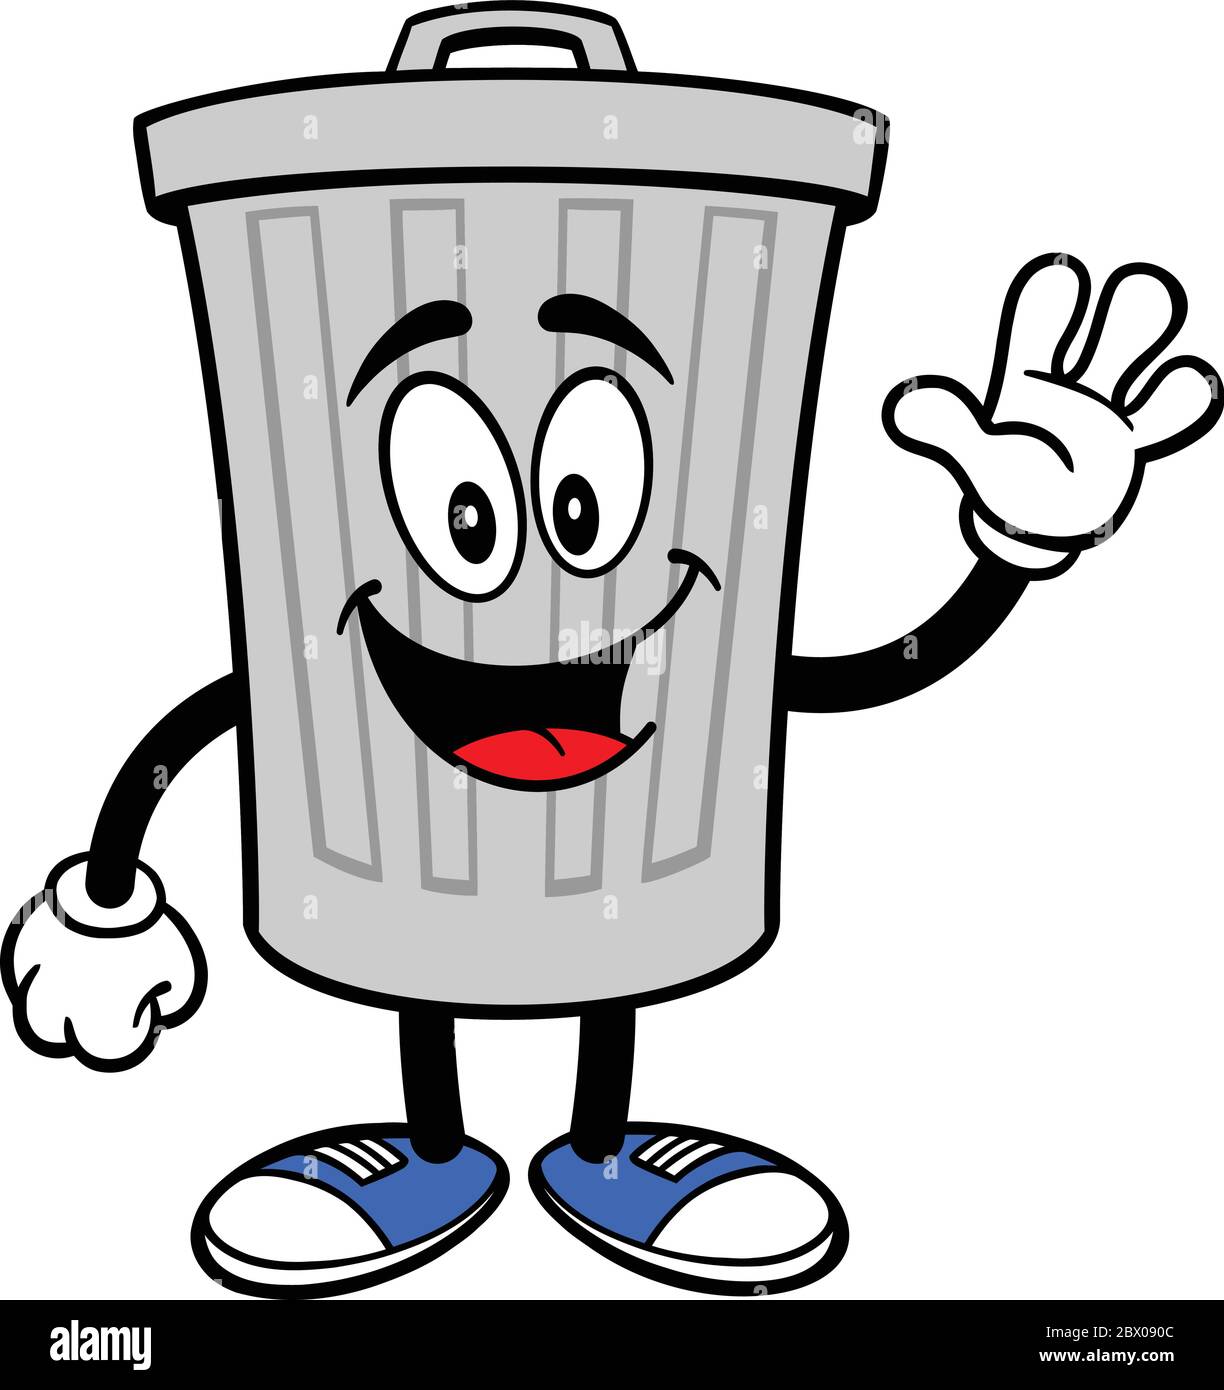 Trash Can Mascot Waving- A Cartoon Illustration of a Trashcan Mascot Waving  Stock Vector Image & Art - Alamy